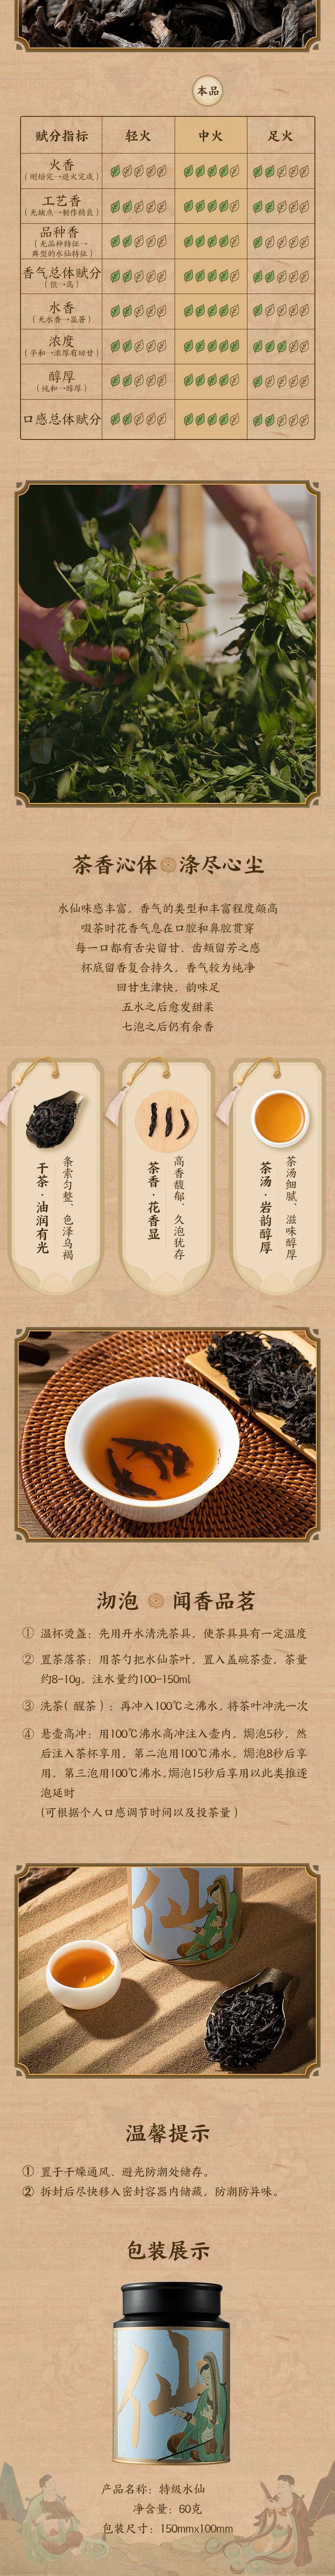 【中国直邮】网易严选 源自武夷正岩产区 特级水仙 茶叶 60克